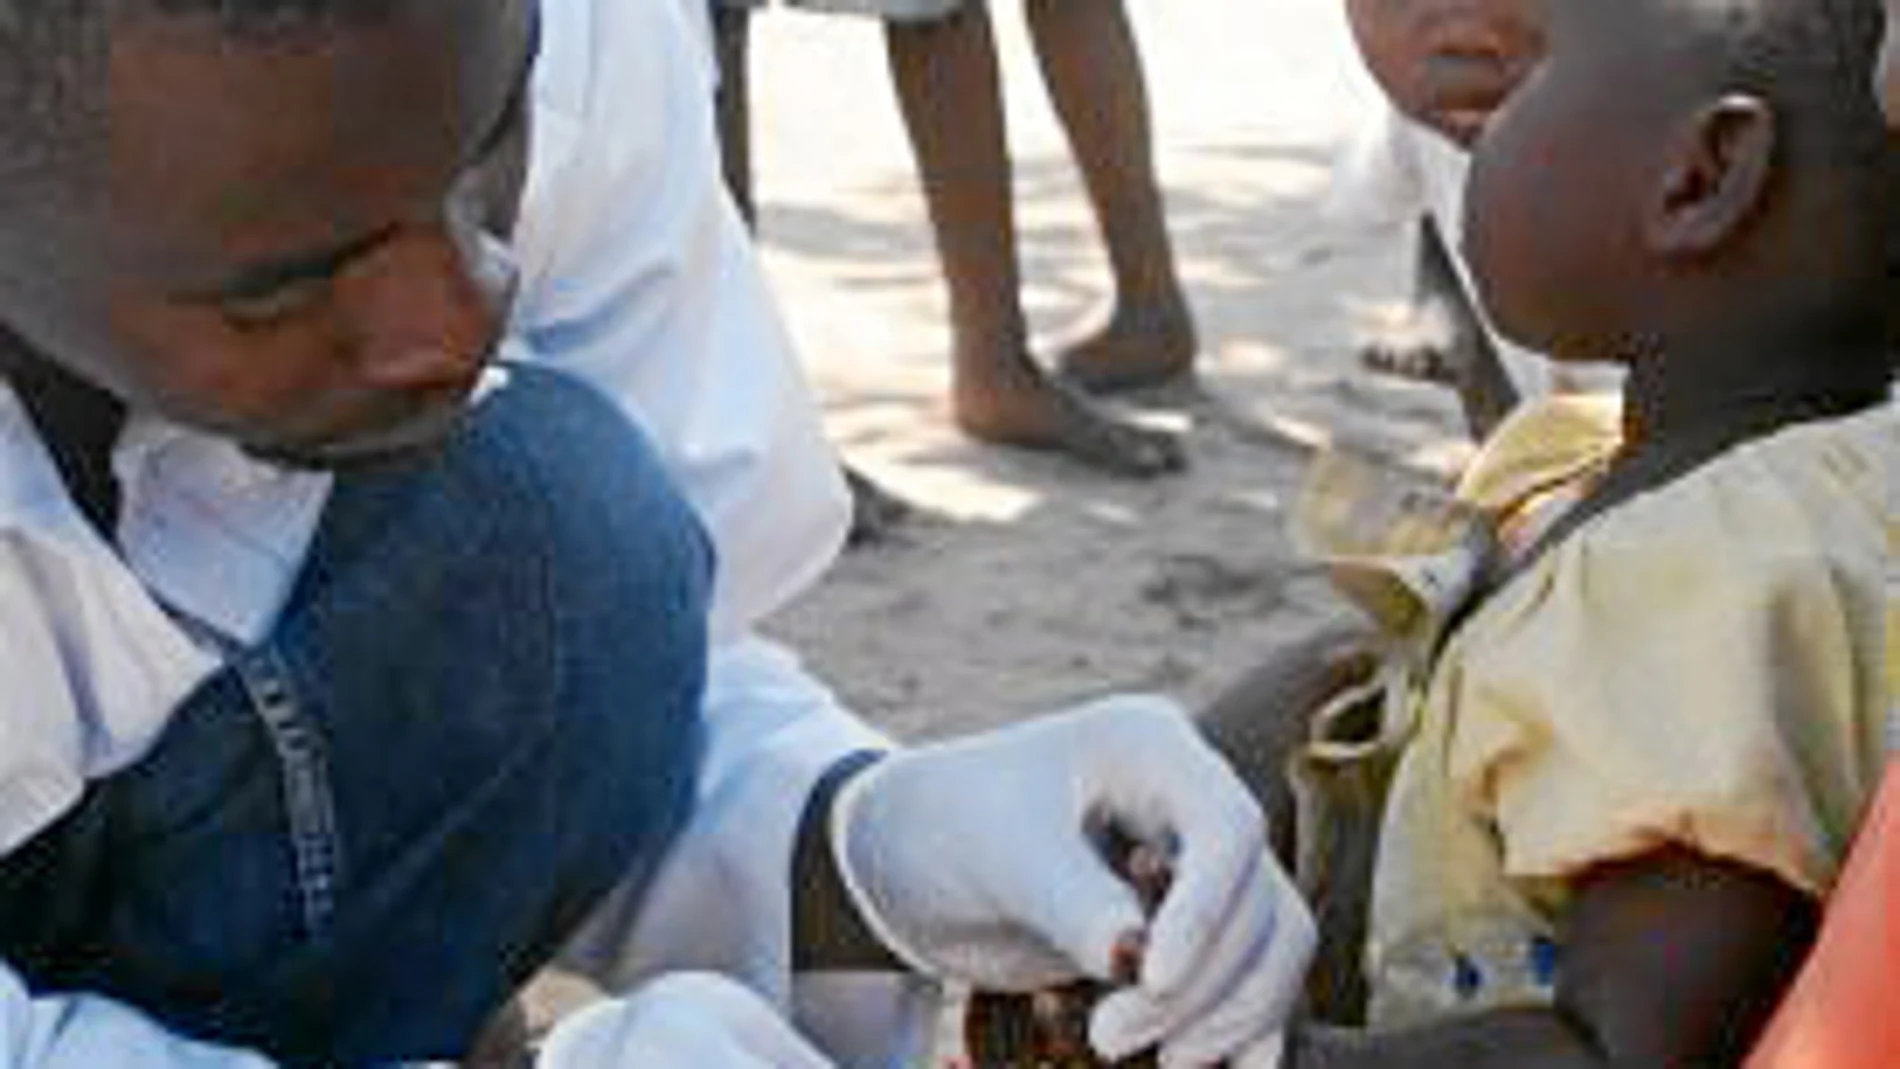 La Obra Social de La Caixa mantiene activa la campaña de microdonativos para la vacunación infantil